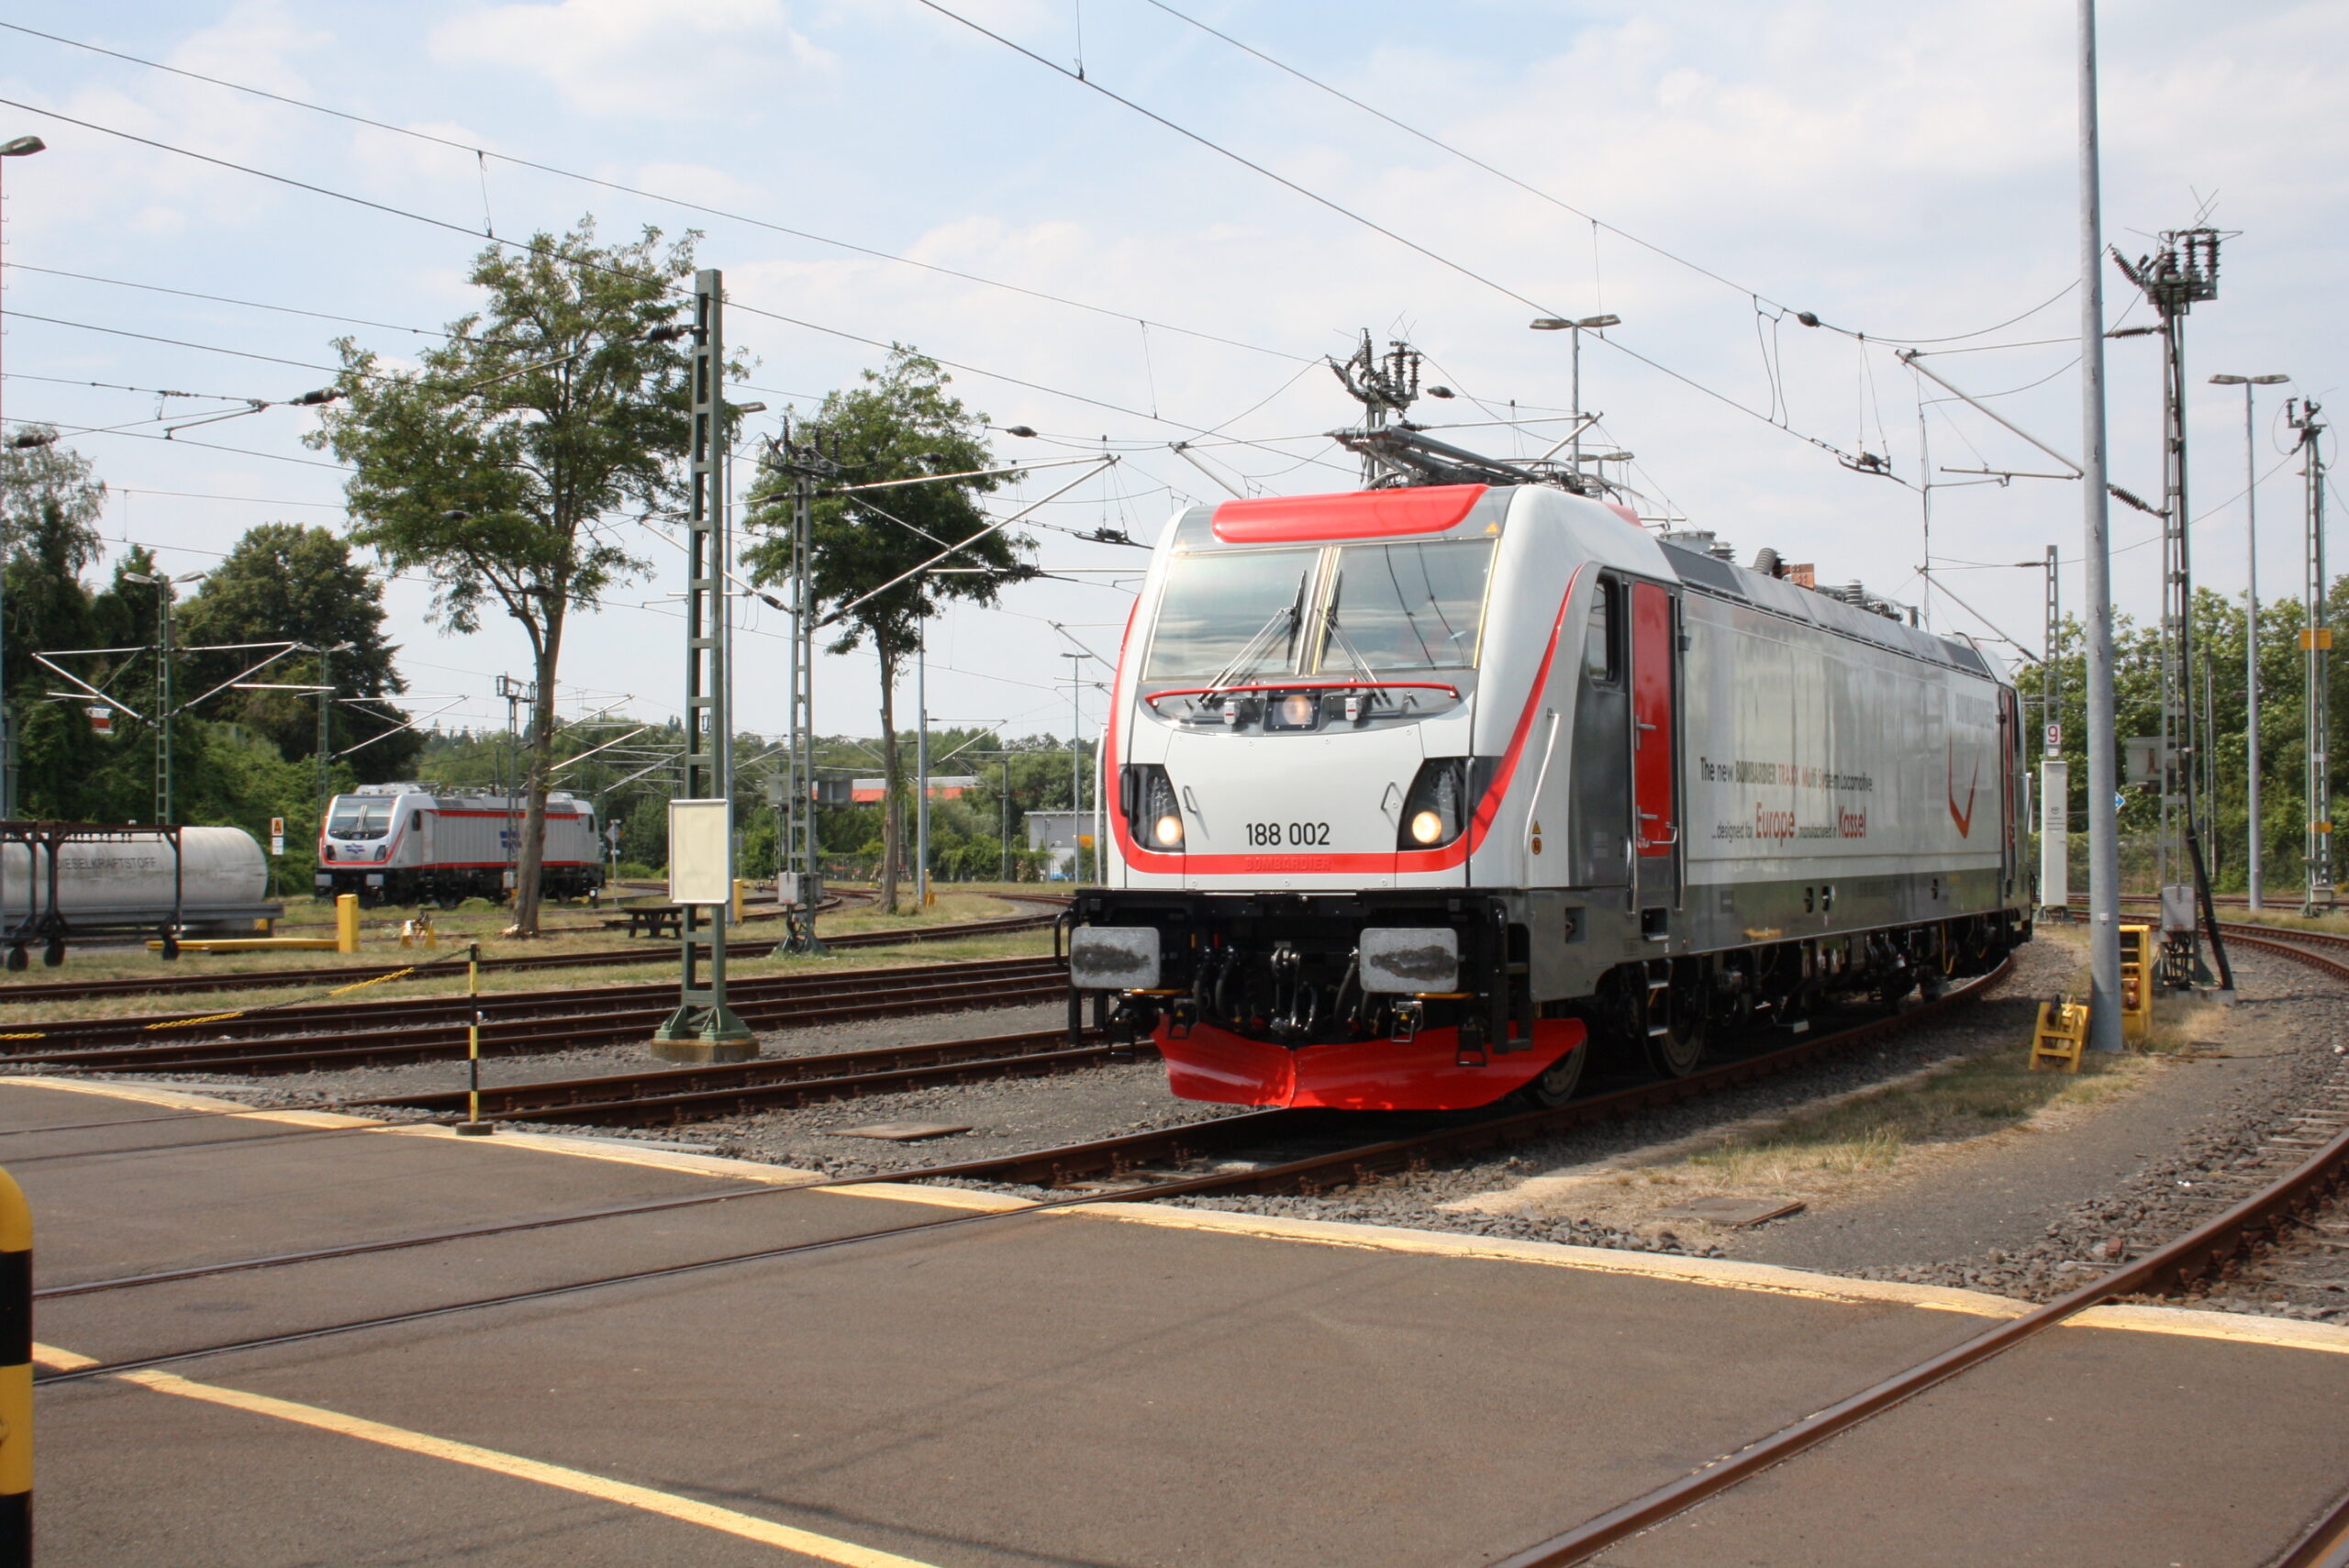 The Alstom Traxx for Romania